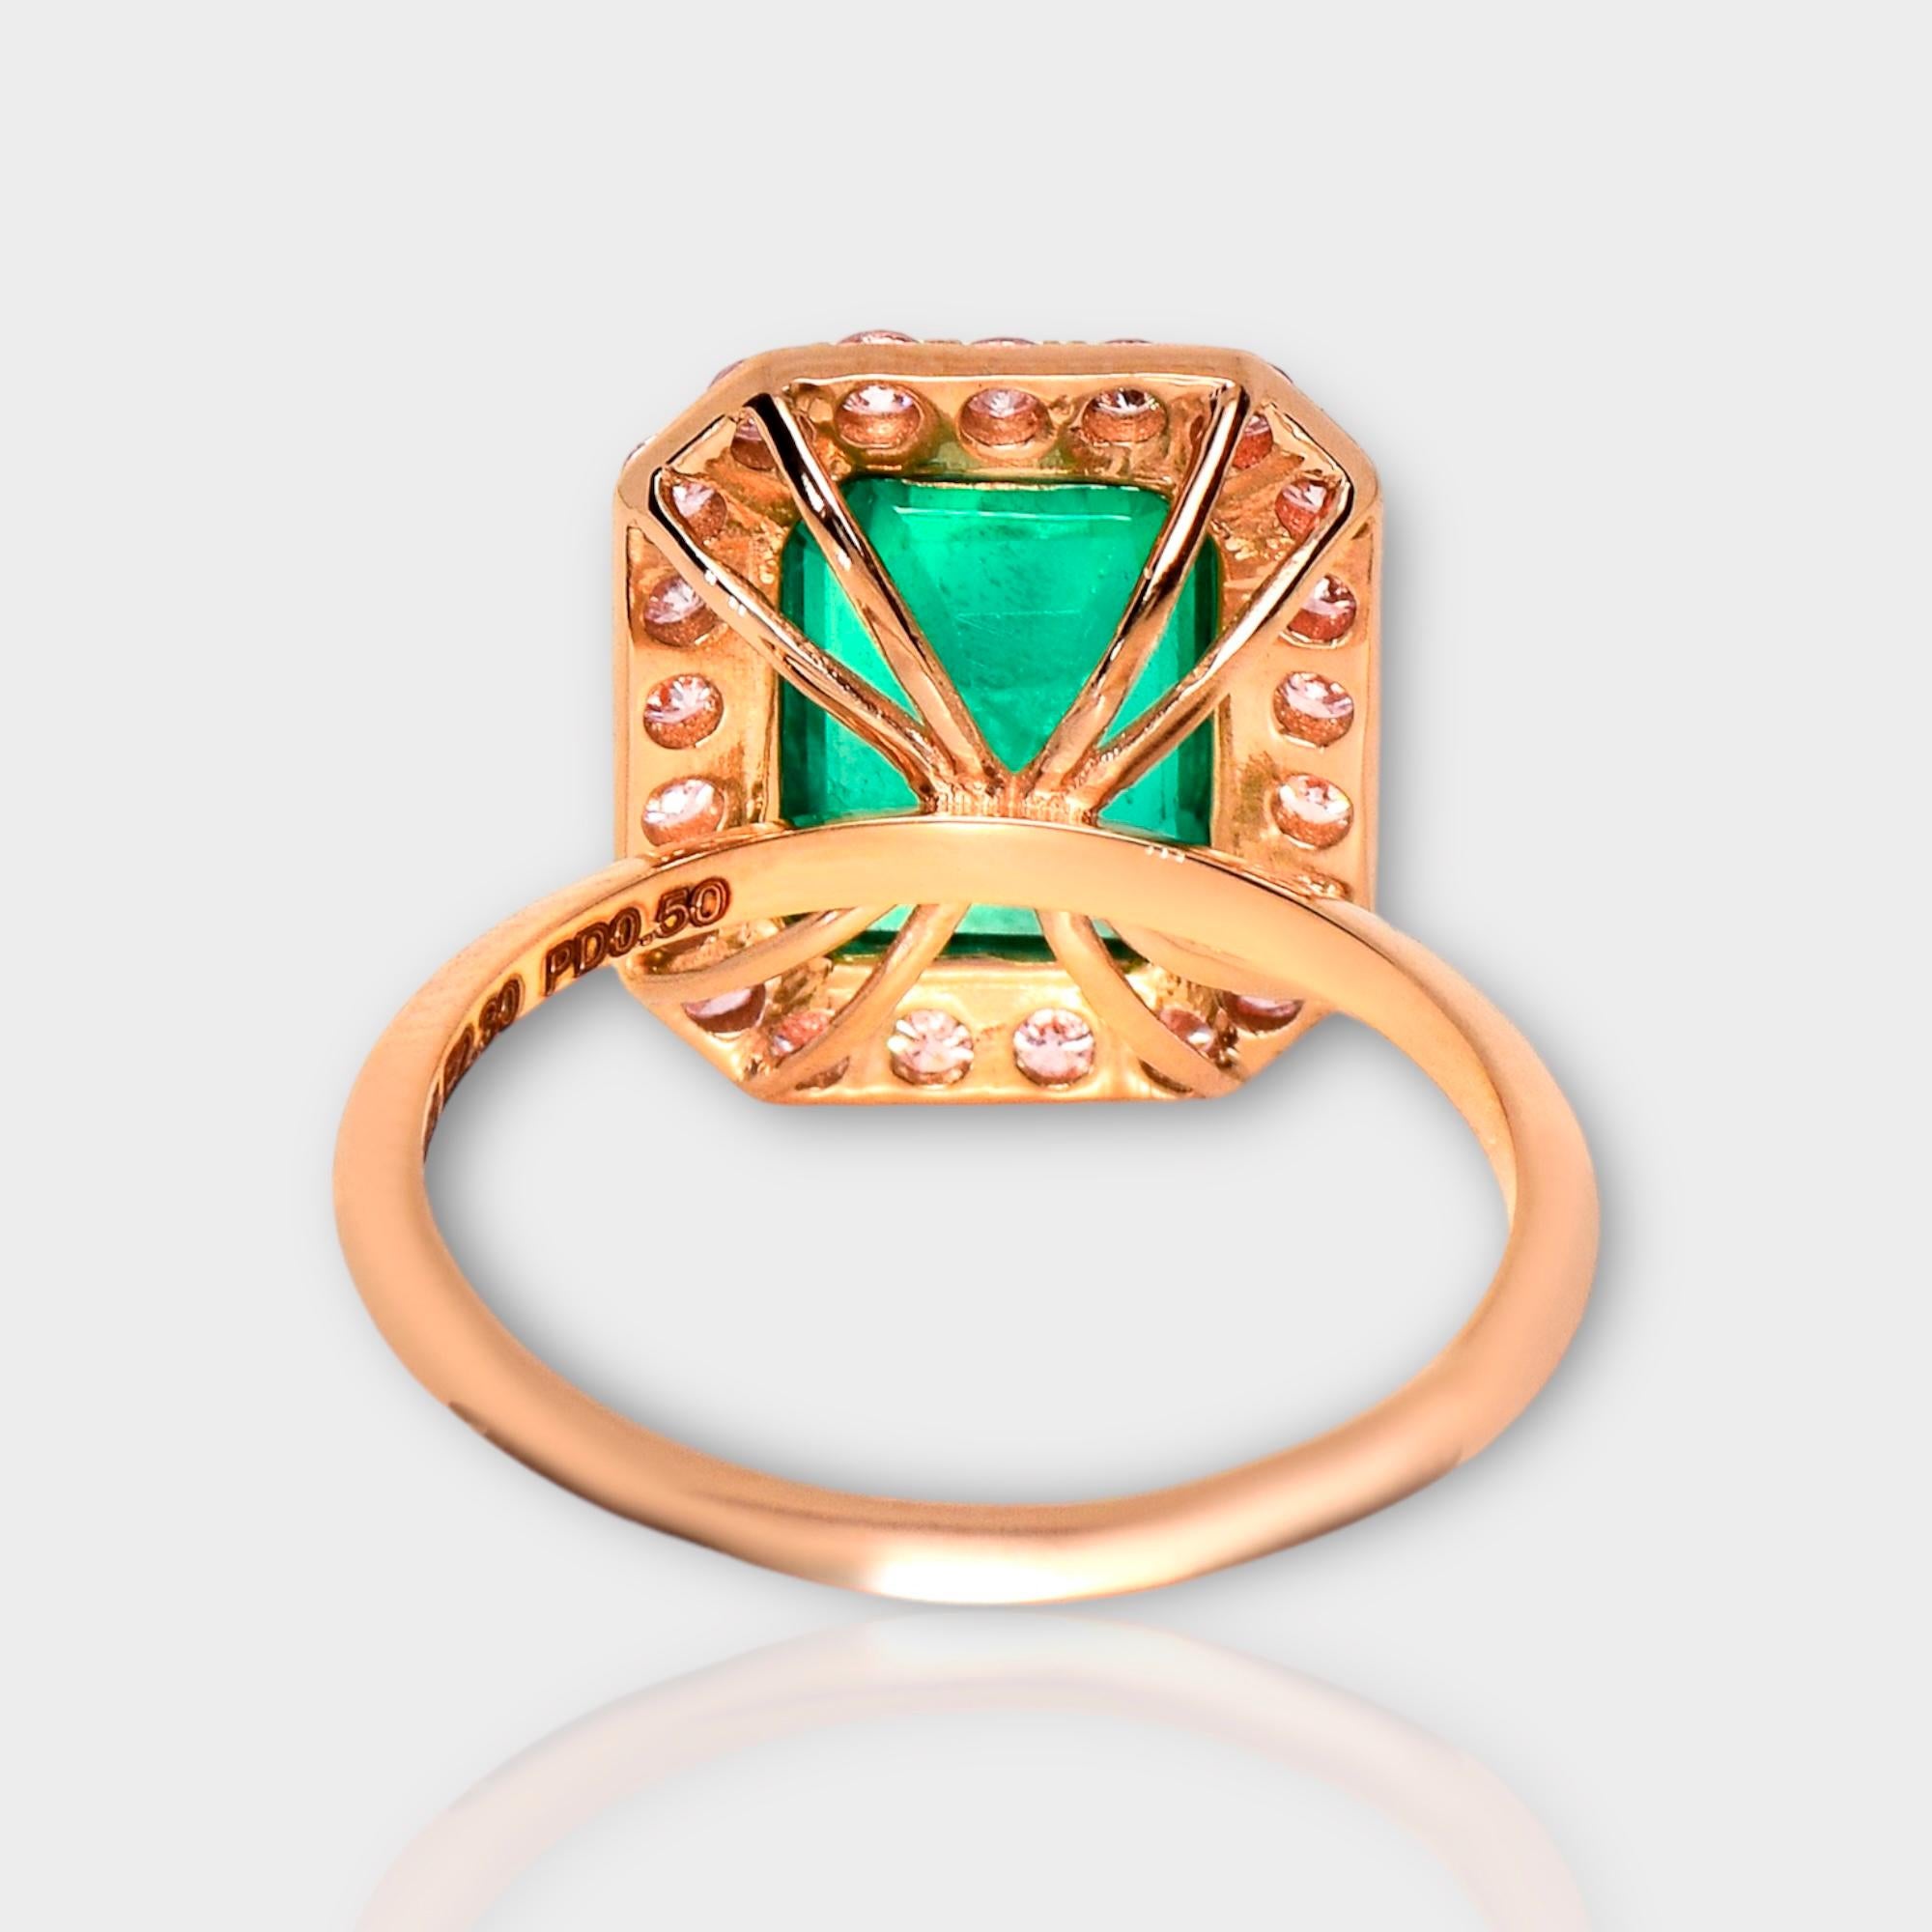 IGI 14K 2.30 ct Natural Green Emerald&Pink Diamond Engagement Ring 1